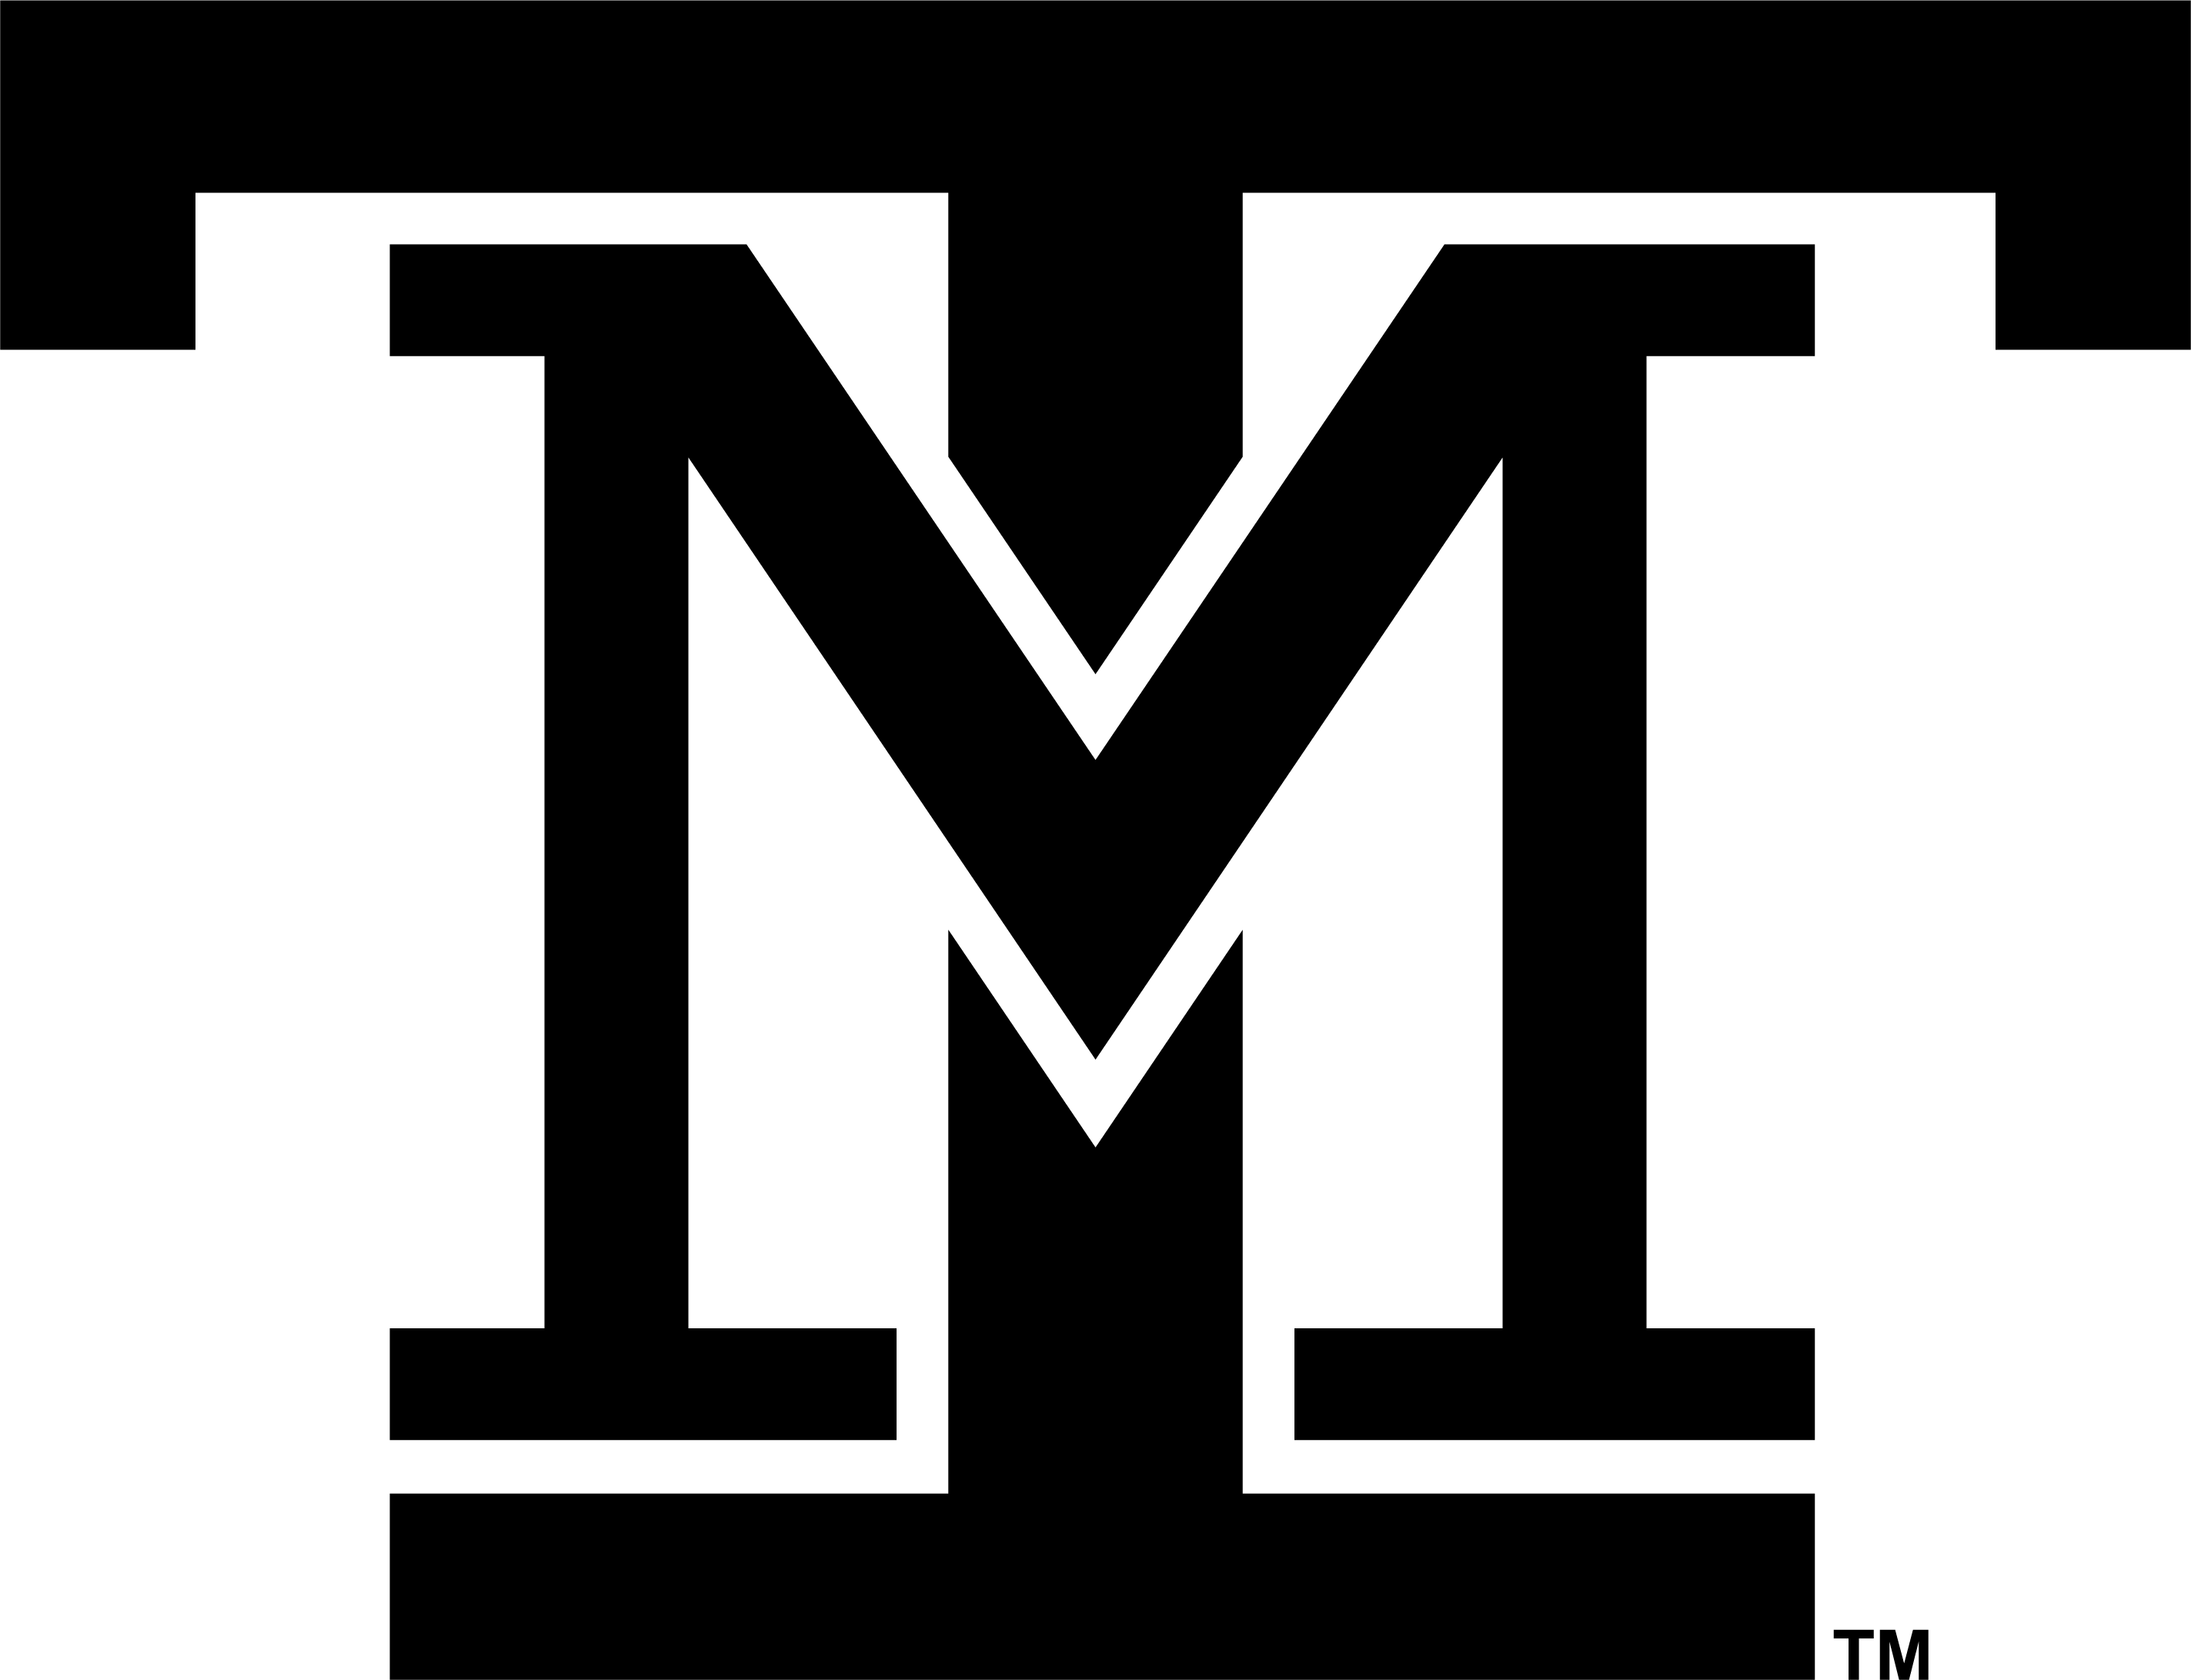 M.Tech Logo - Logo Use